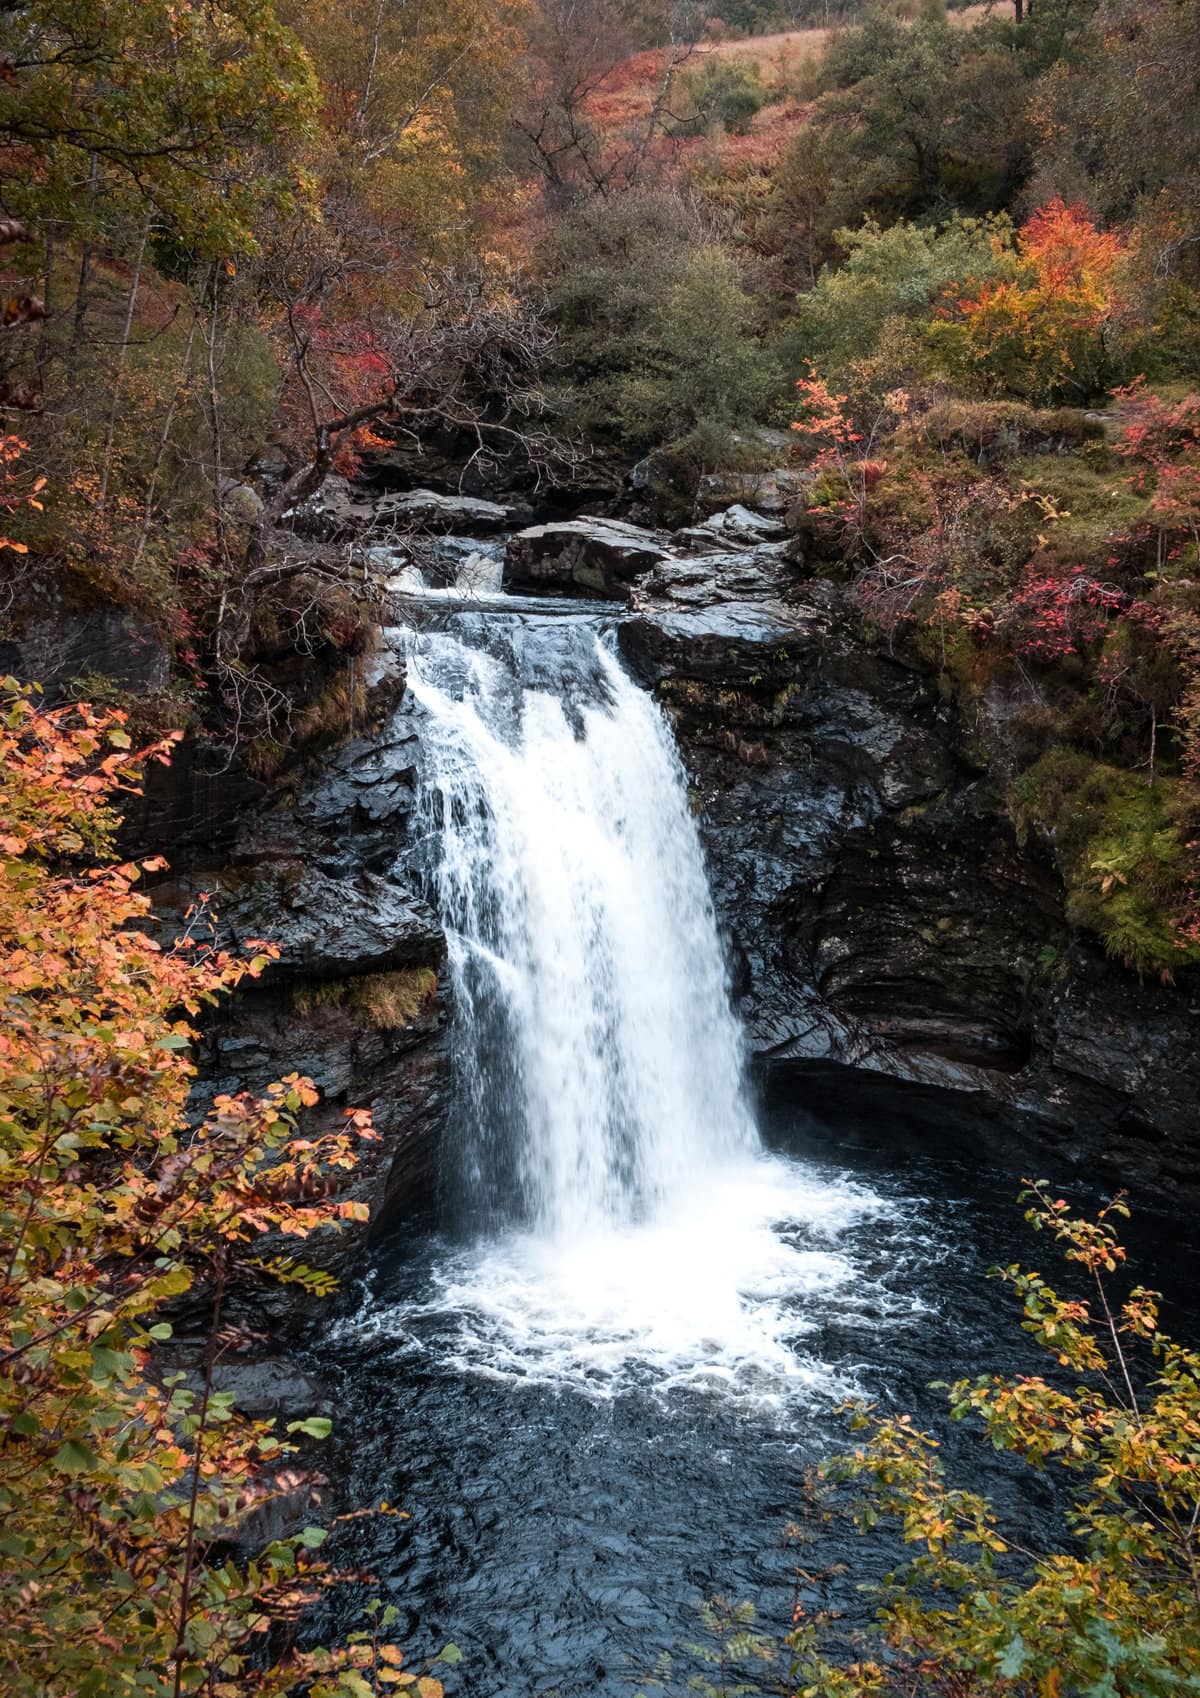 Falls of Falloch Waterfall in Scotland